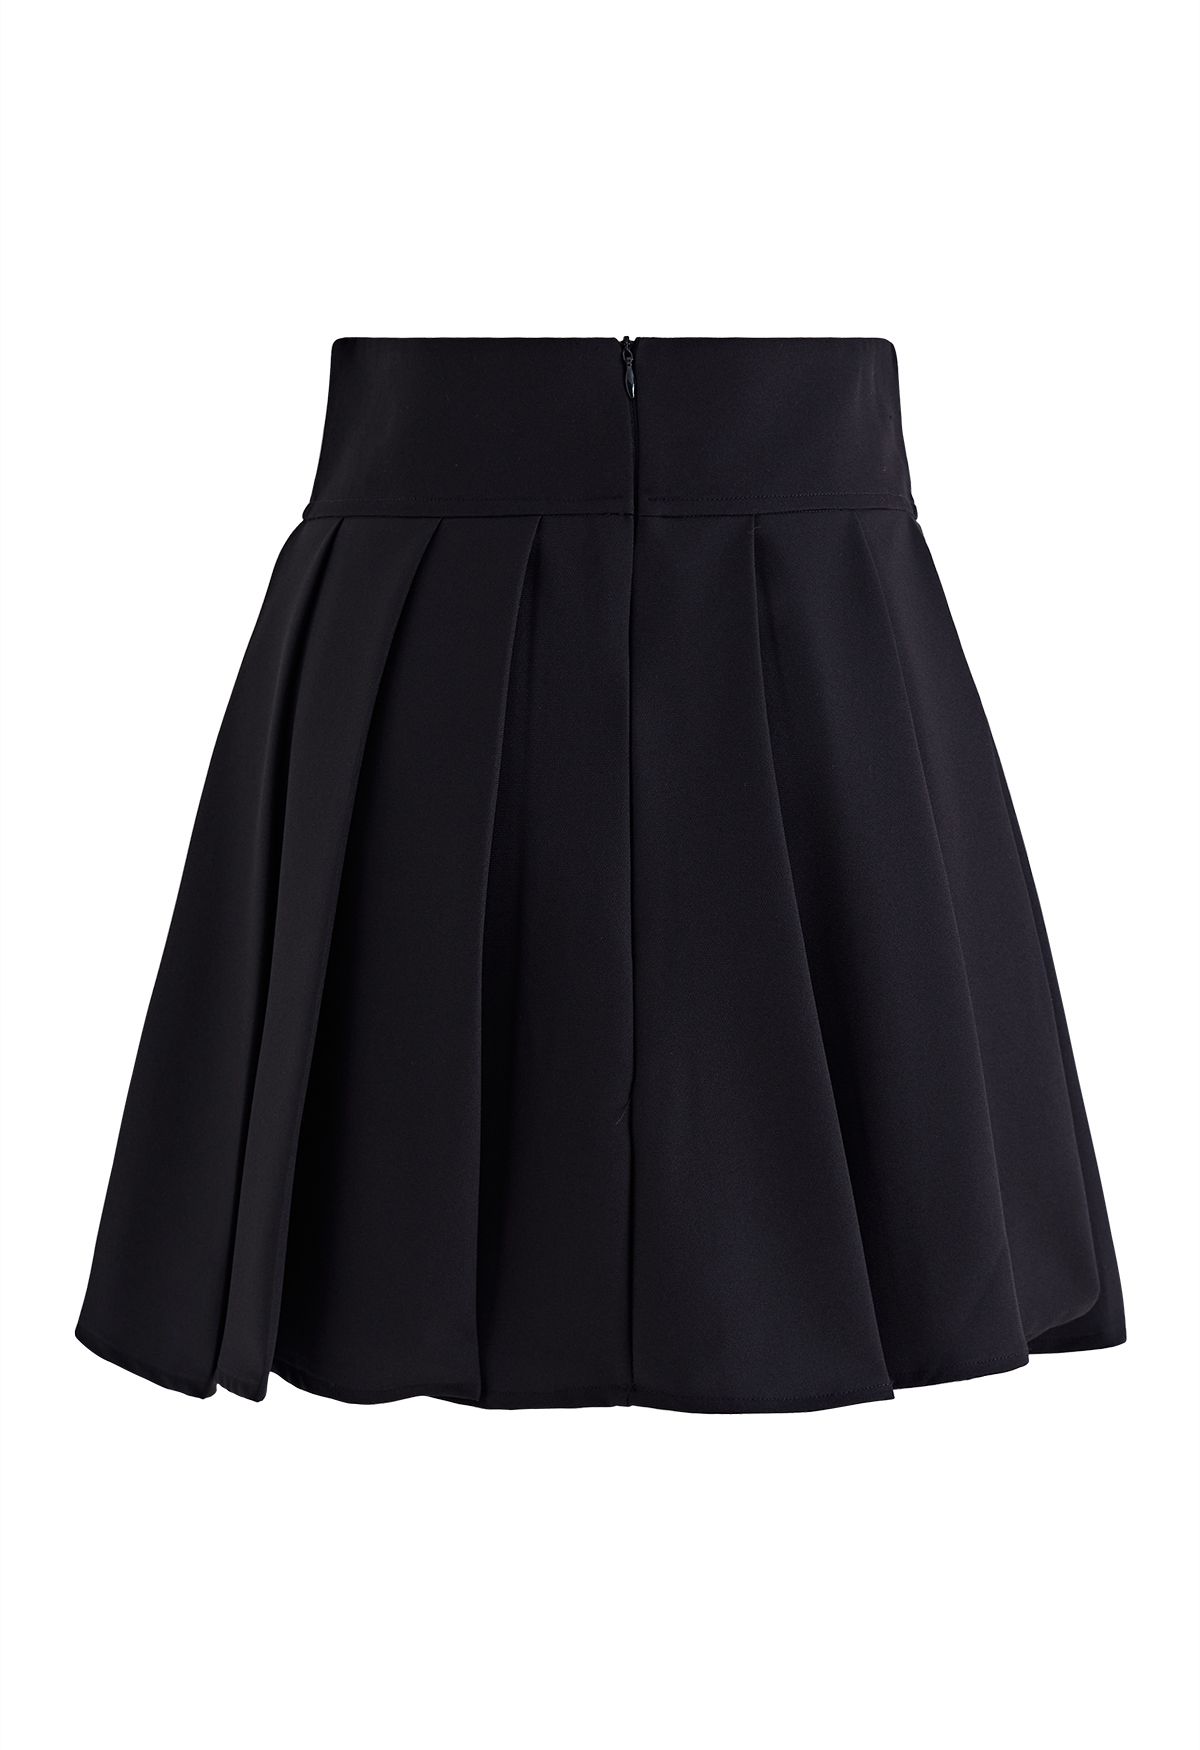 BLACK PLEATED SKIRT  Black pleated skirt, Pleated skirt, Skirts